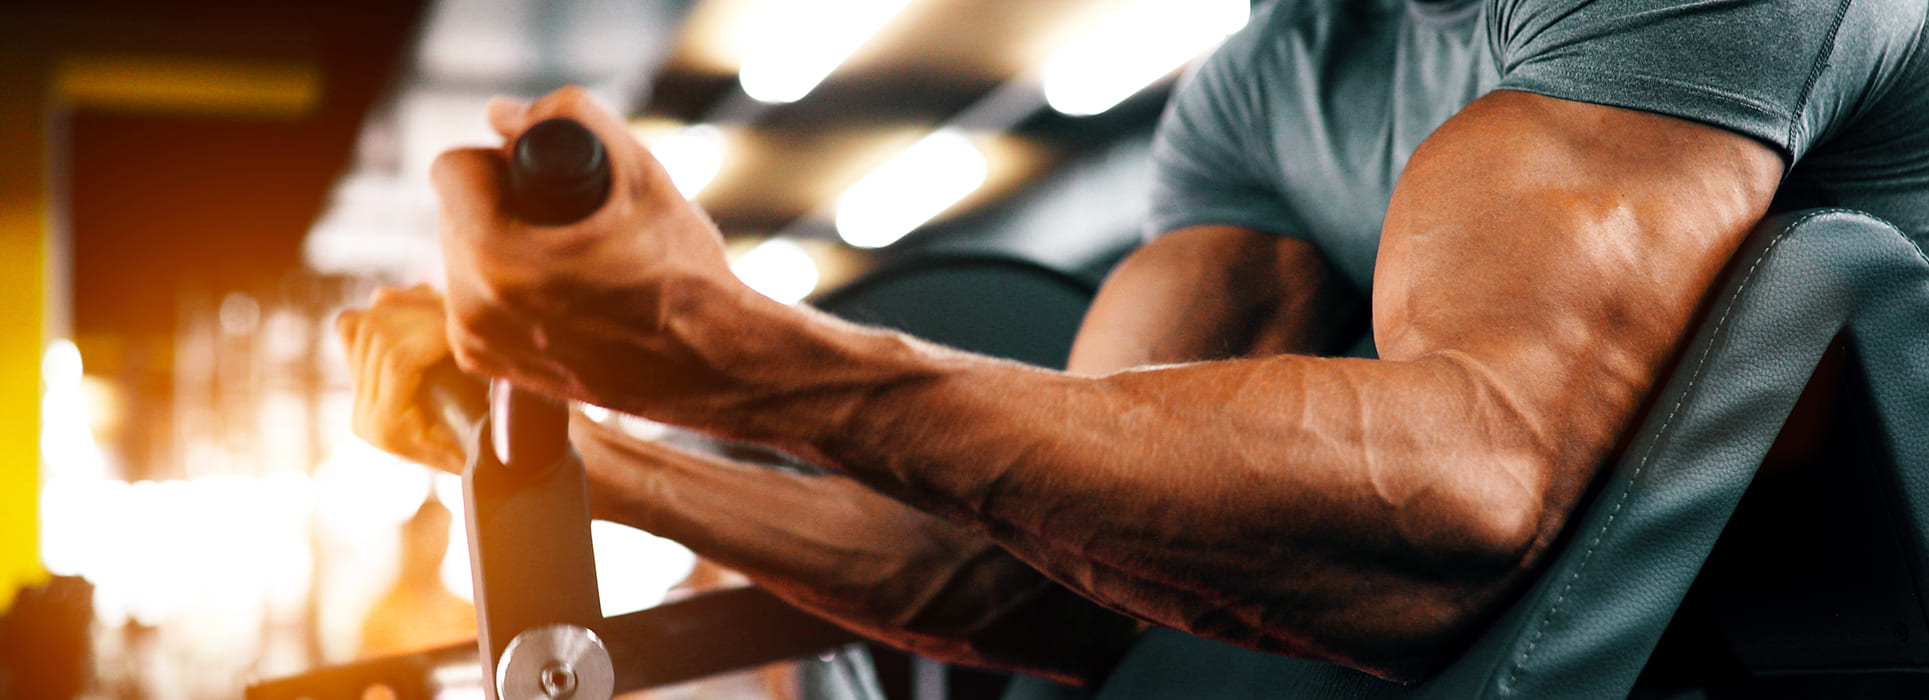 Aumento massa muscolare: come capire se i muscoli crescono